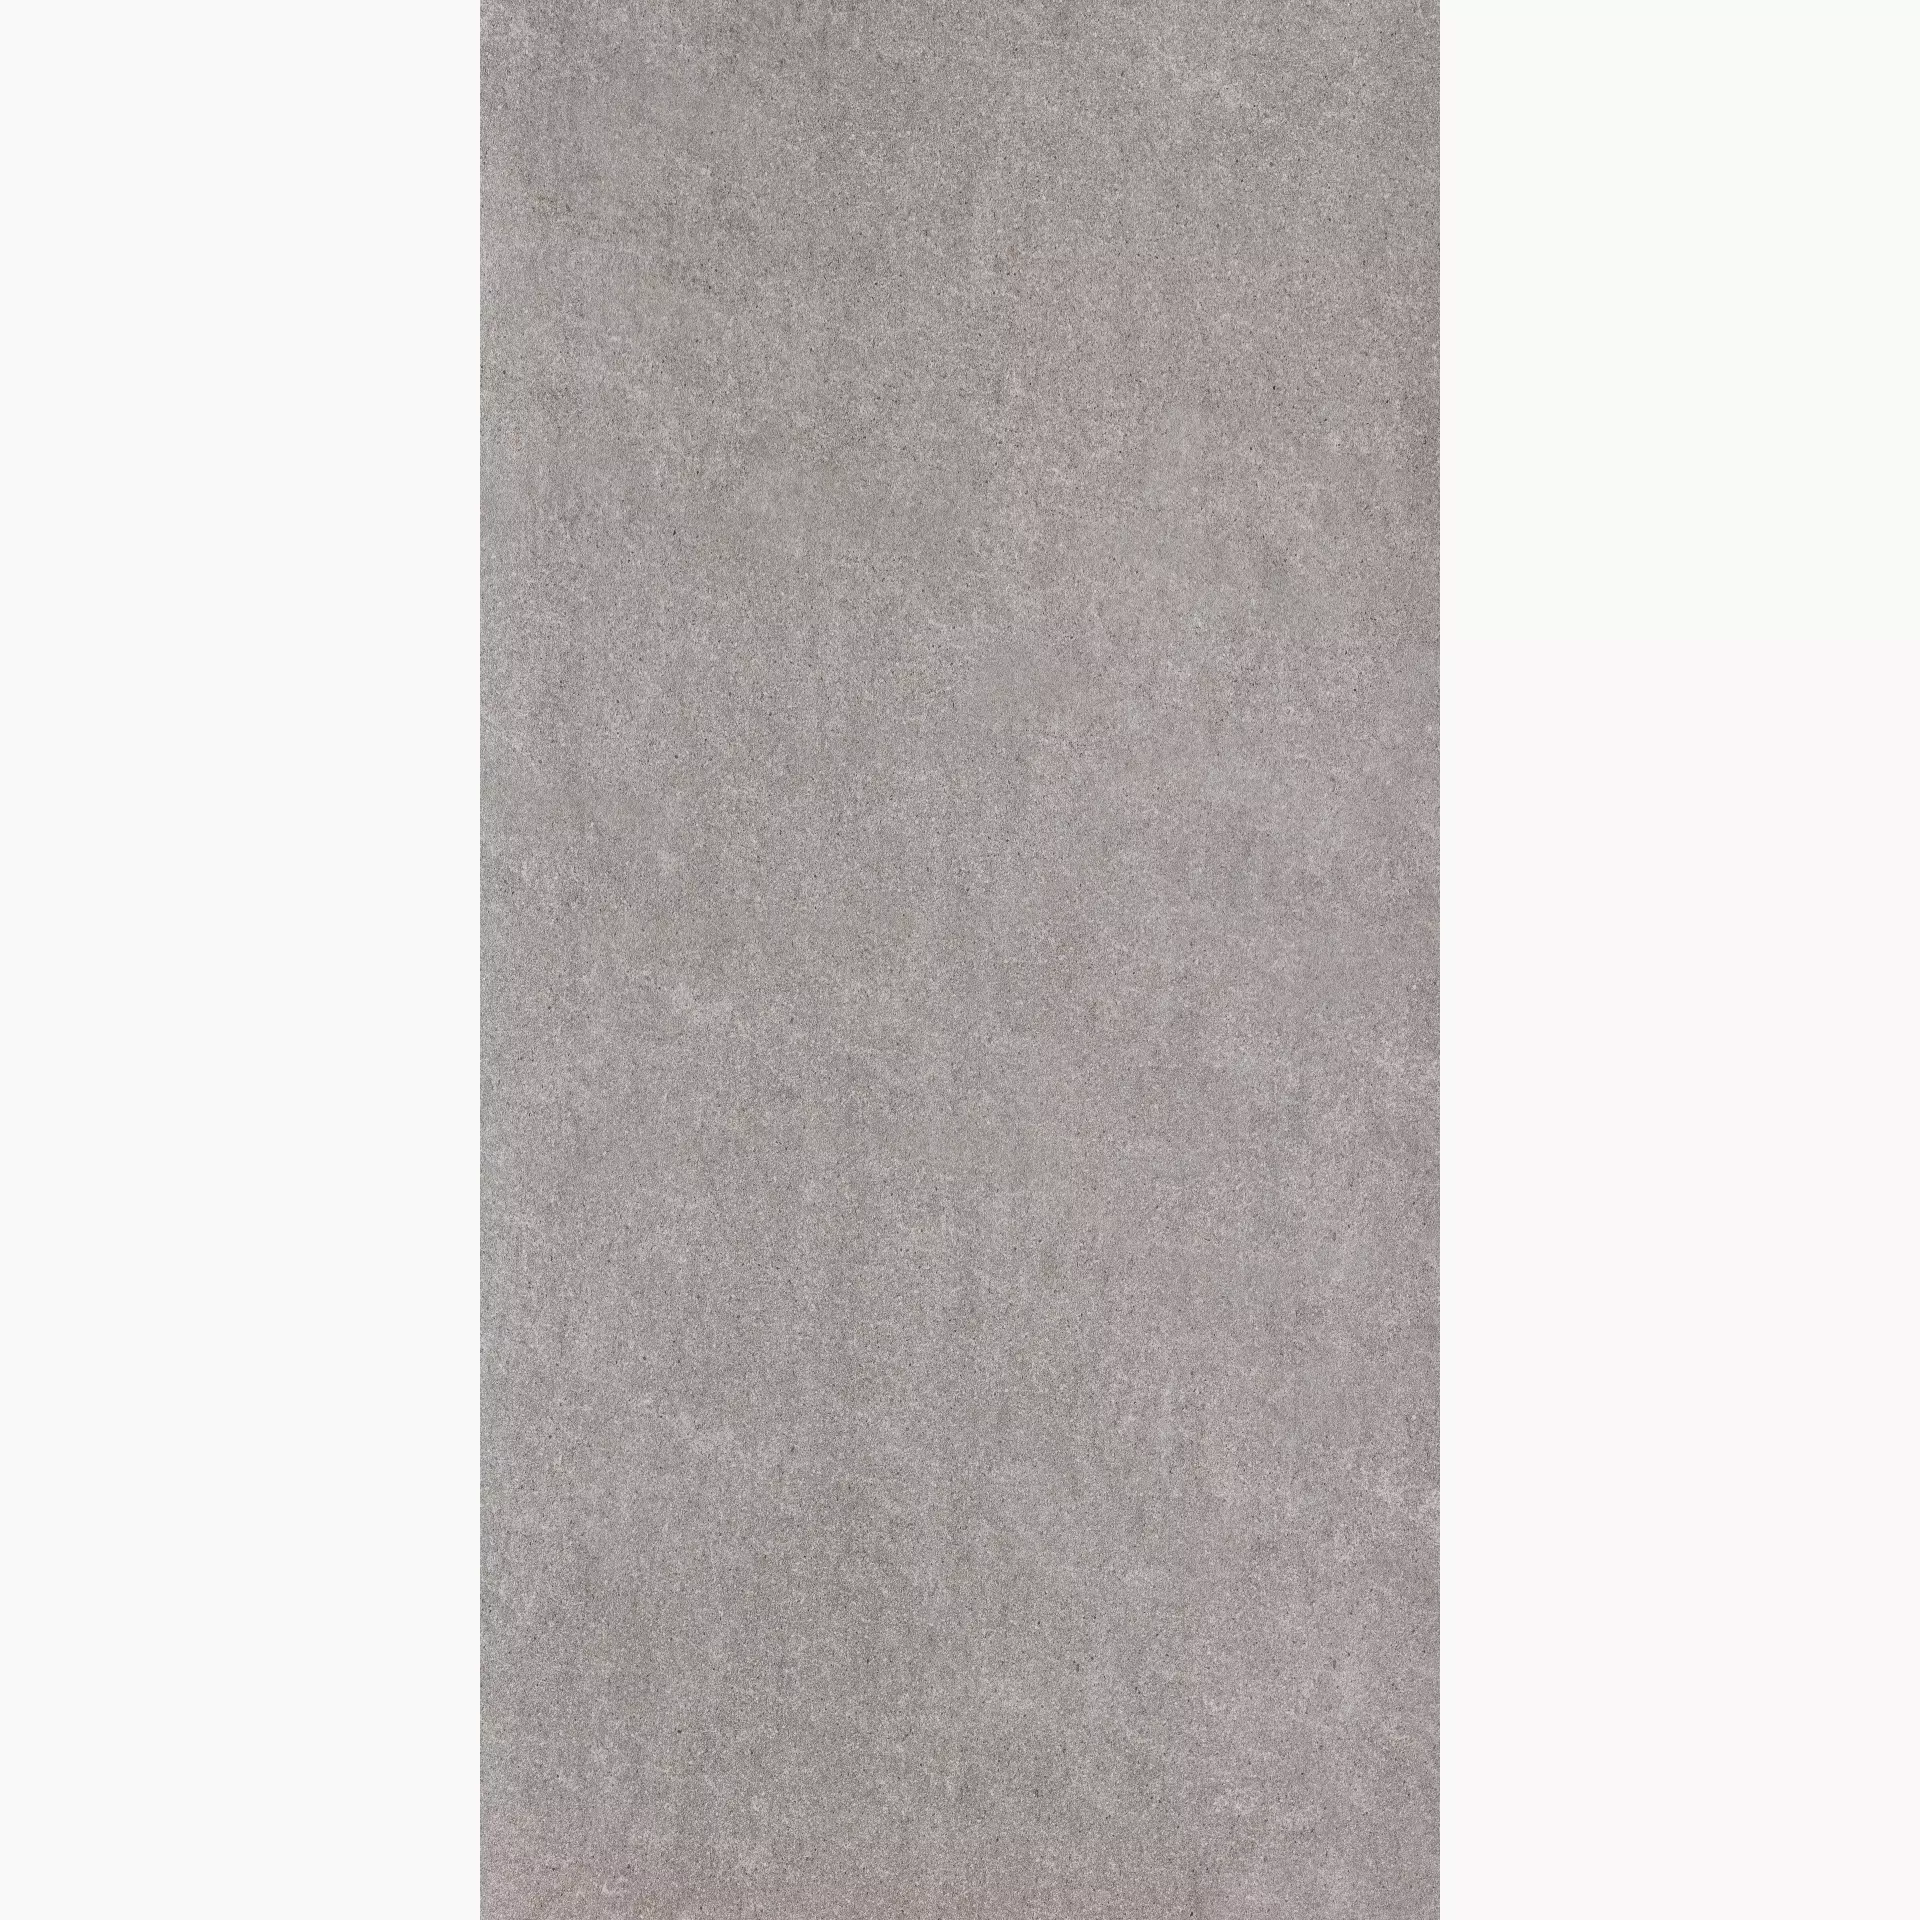 Rak City Stone Grey Natural – Matt Grey AGB09CTSEGRYZMLNLR natur matt 30x60cm rektifiziert 9mm